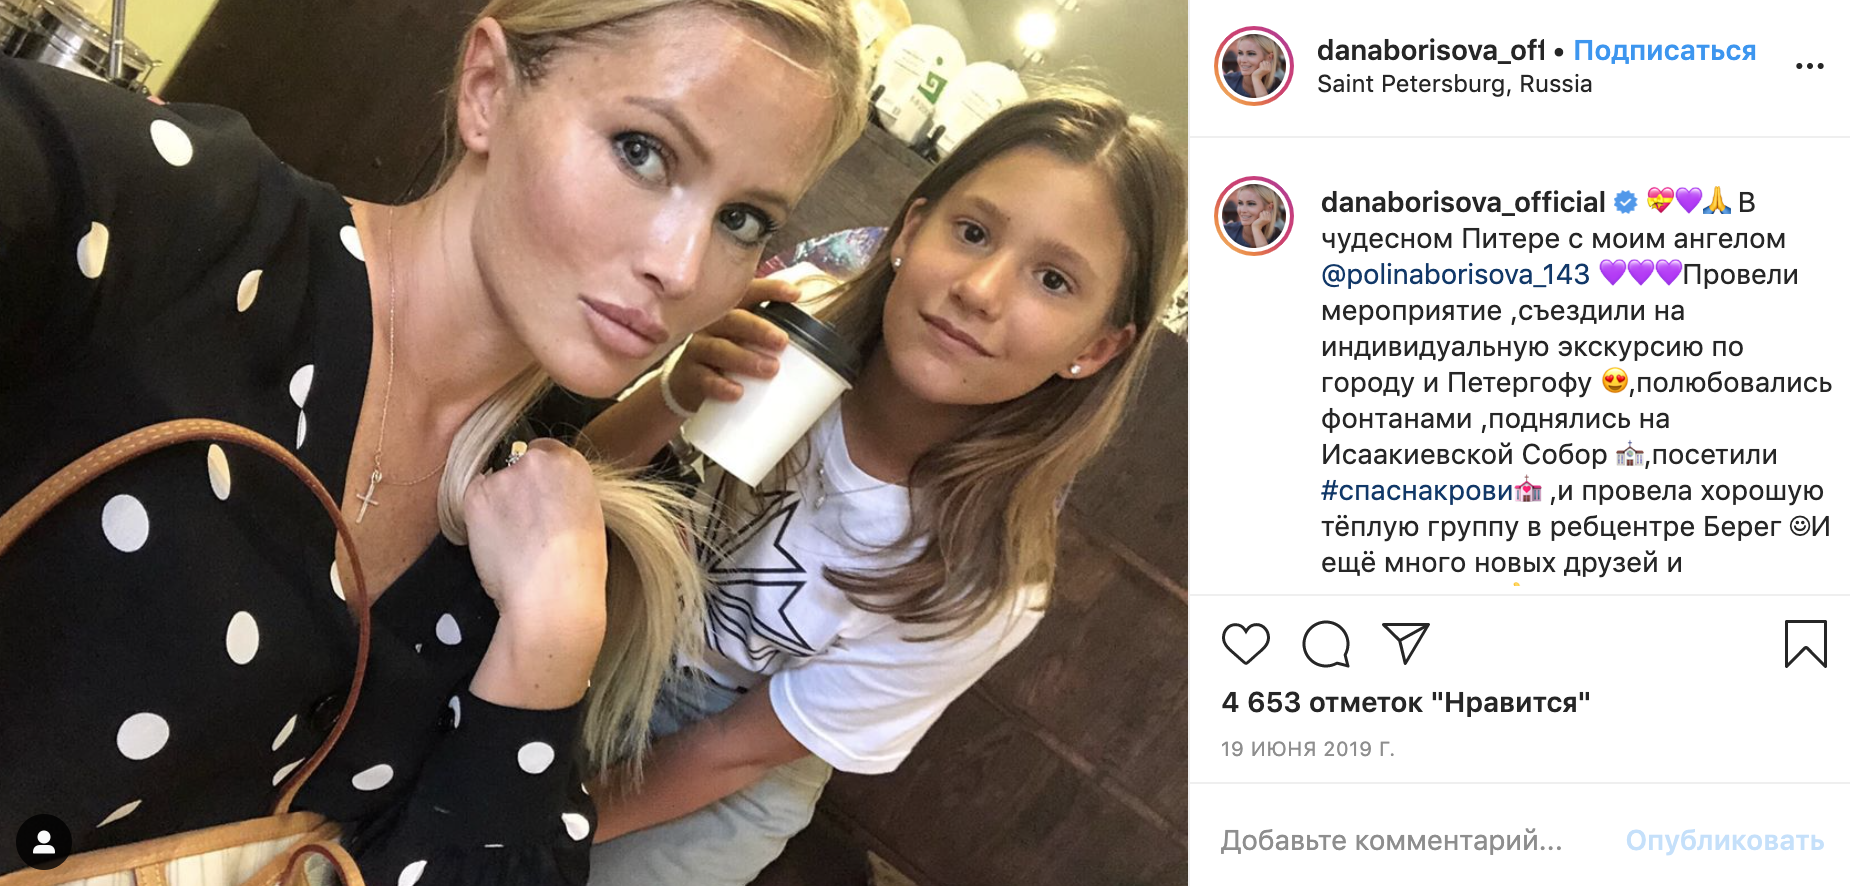 Дана Борисова с дочерью Полиной на отдыхе в Санкт-Петербурге